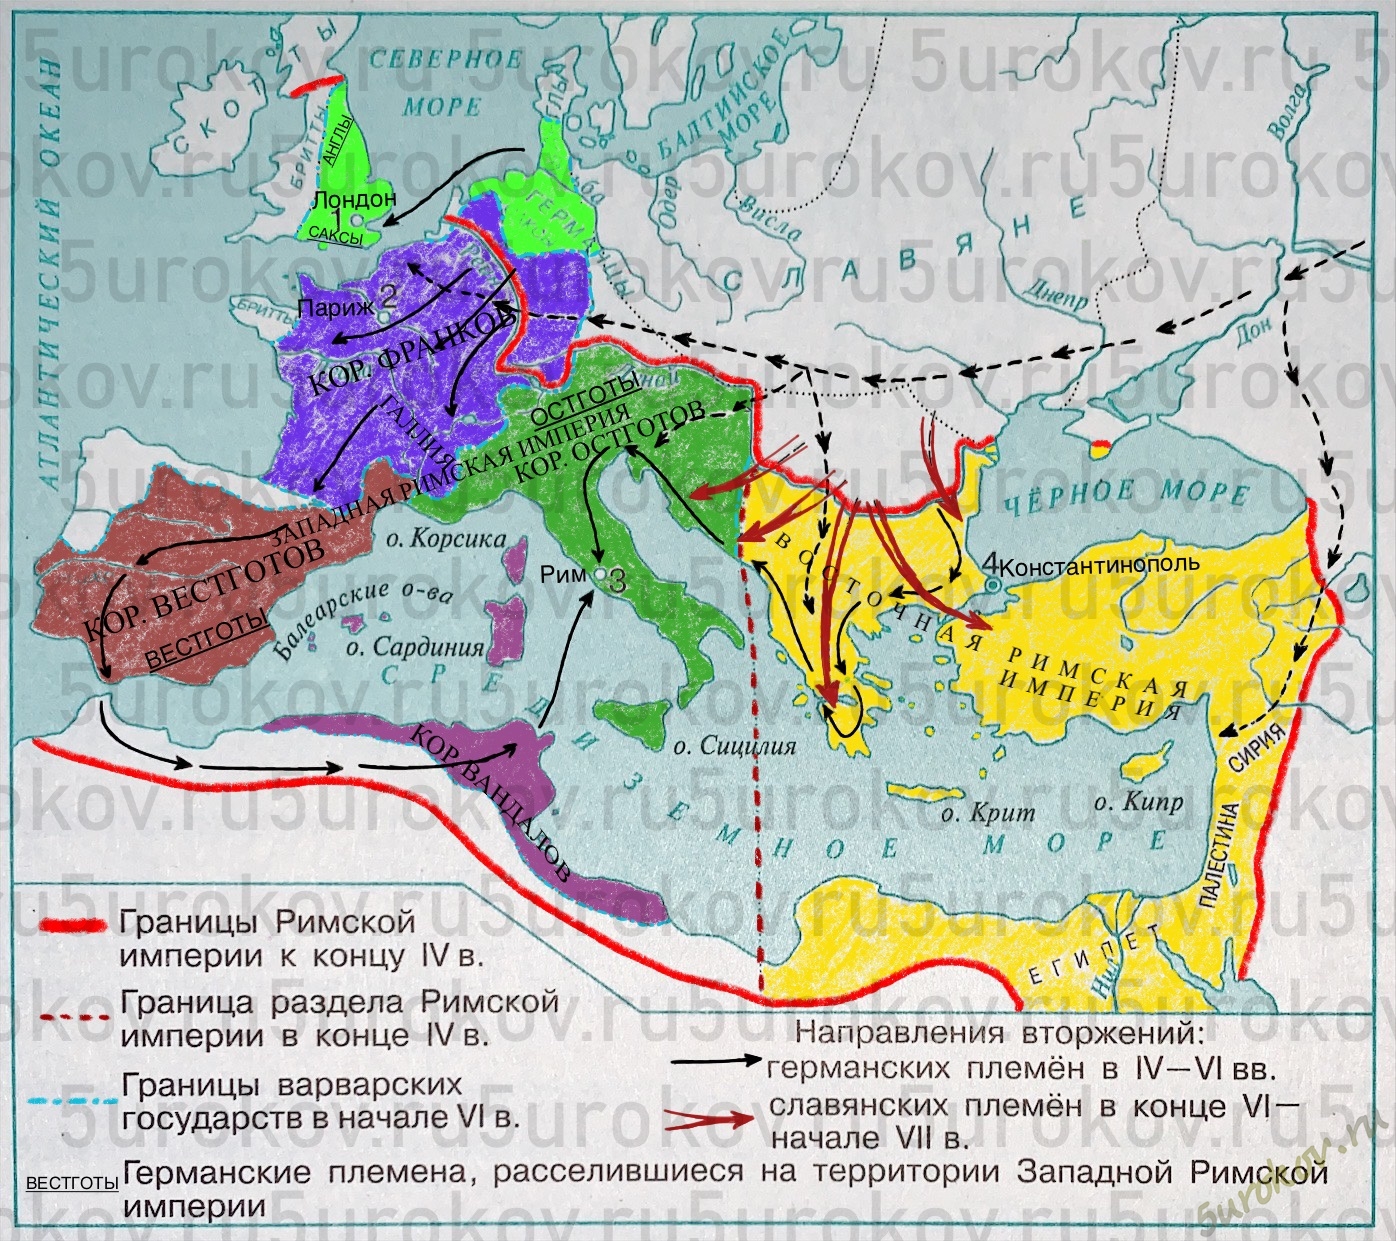  Ответ на вопрос по теме Основные даты и события в истории Восточной Римской Империи